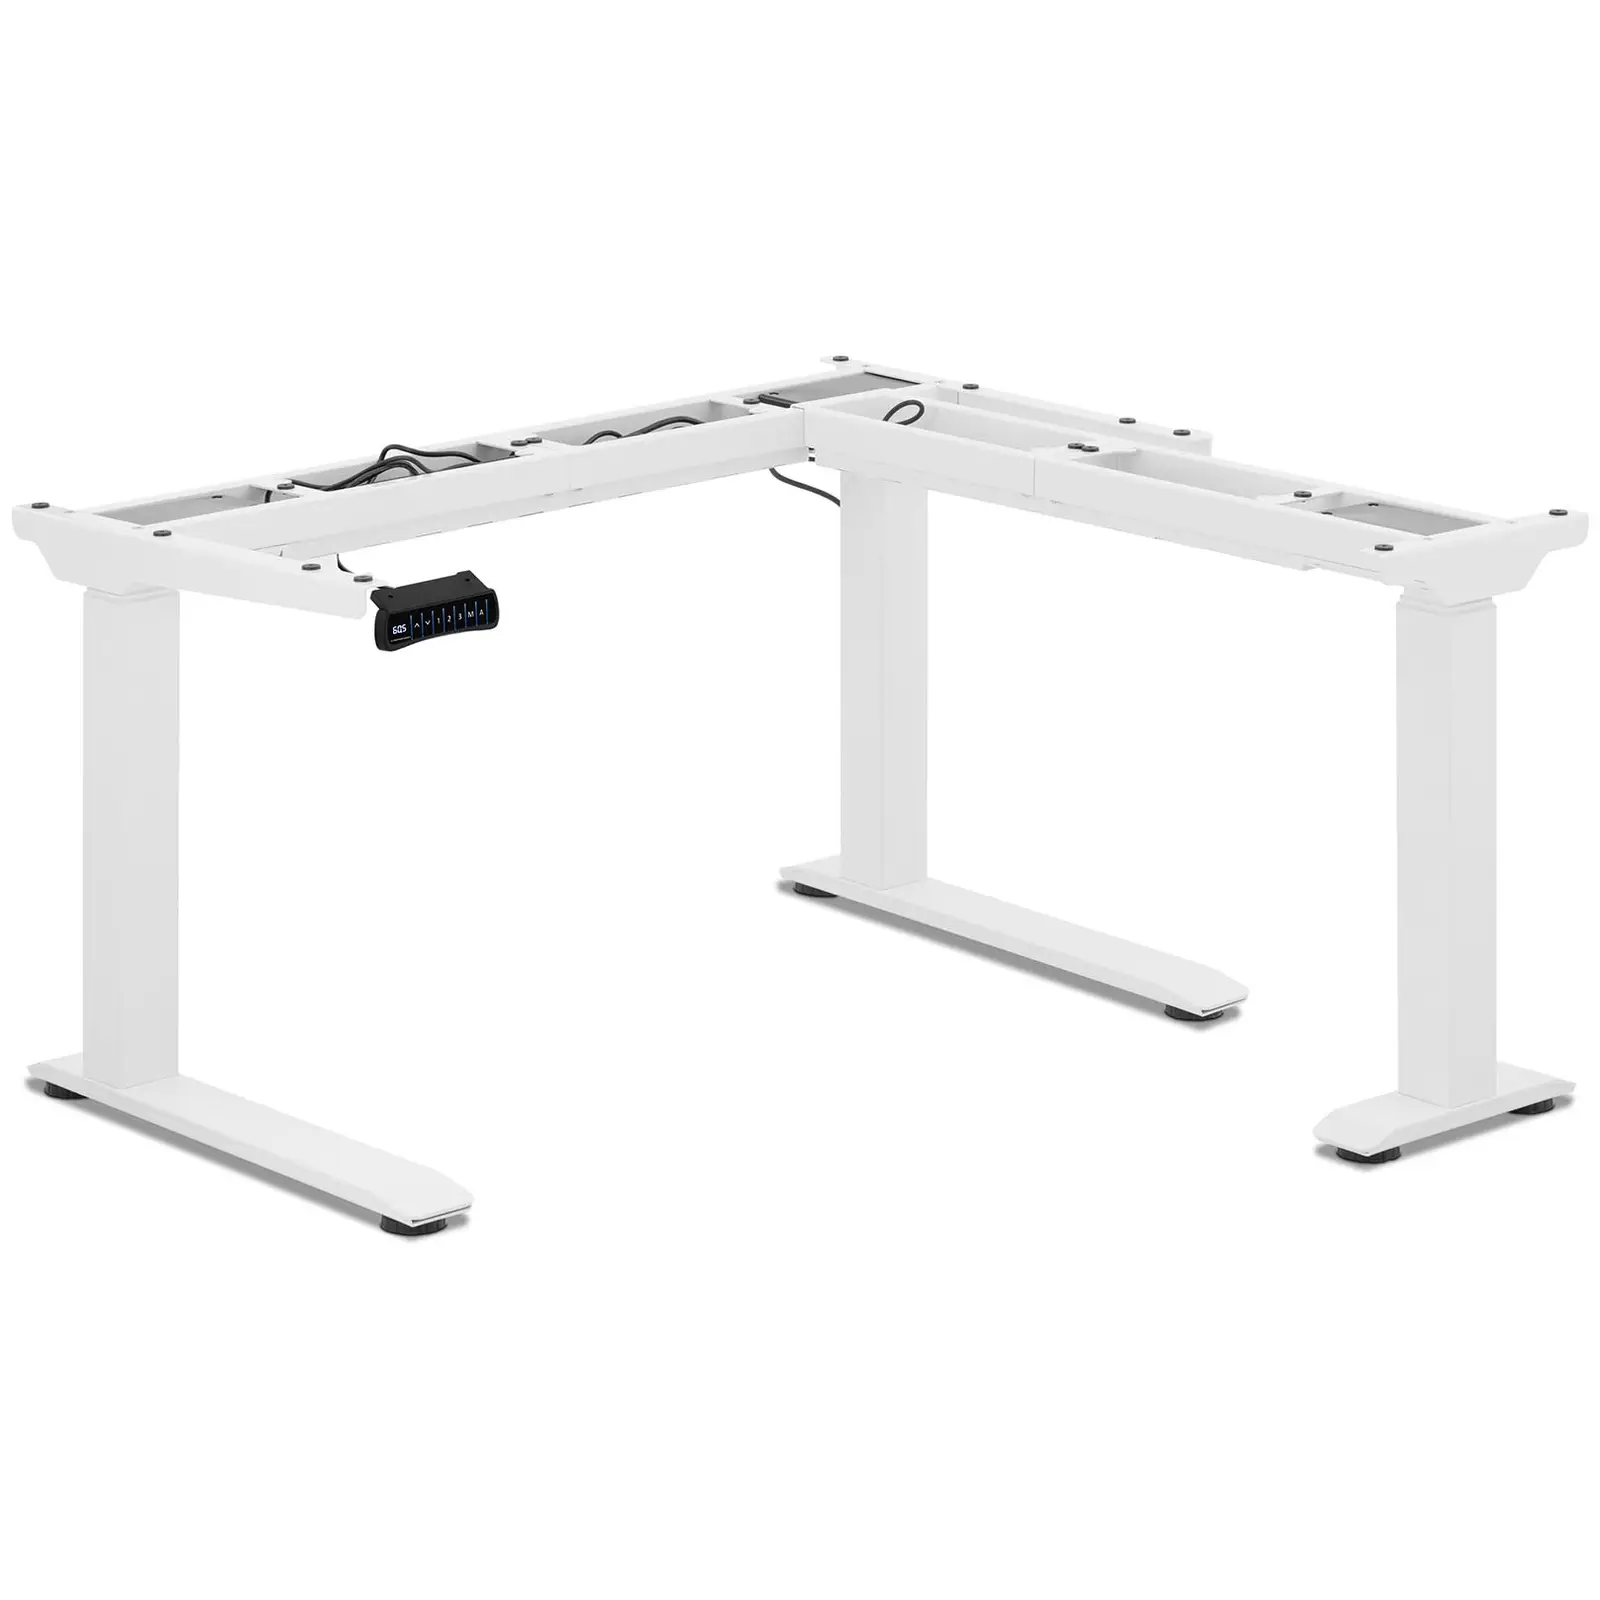 Korkeussäädettävä työpöydän runko - korkeus: 60 - 125 cm - leveys: 110 - 190 cm / 90 - 150 cm